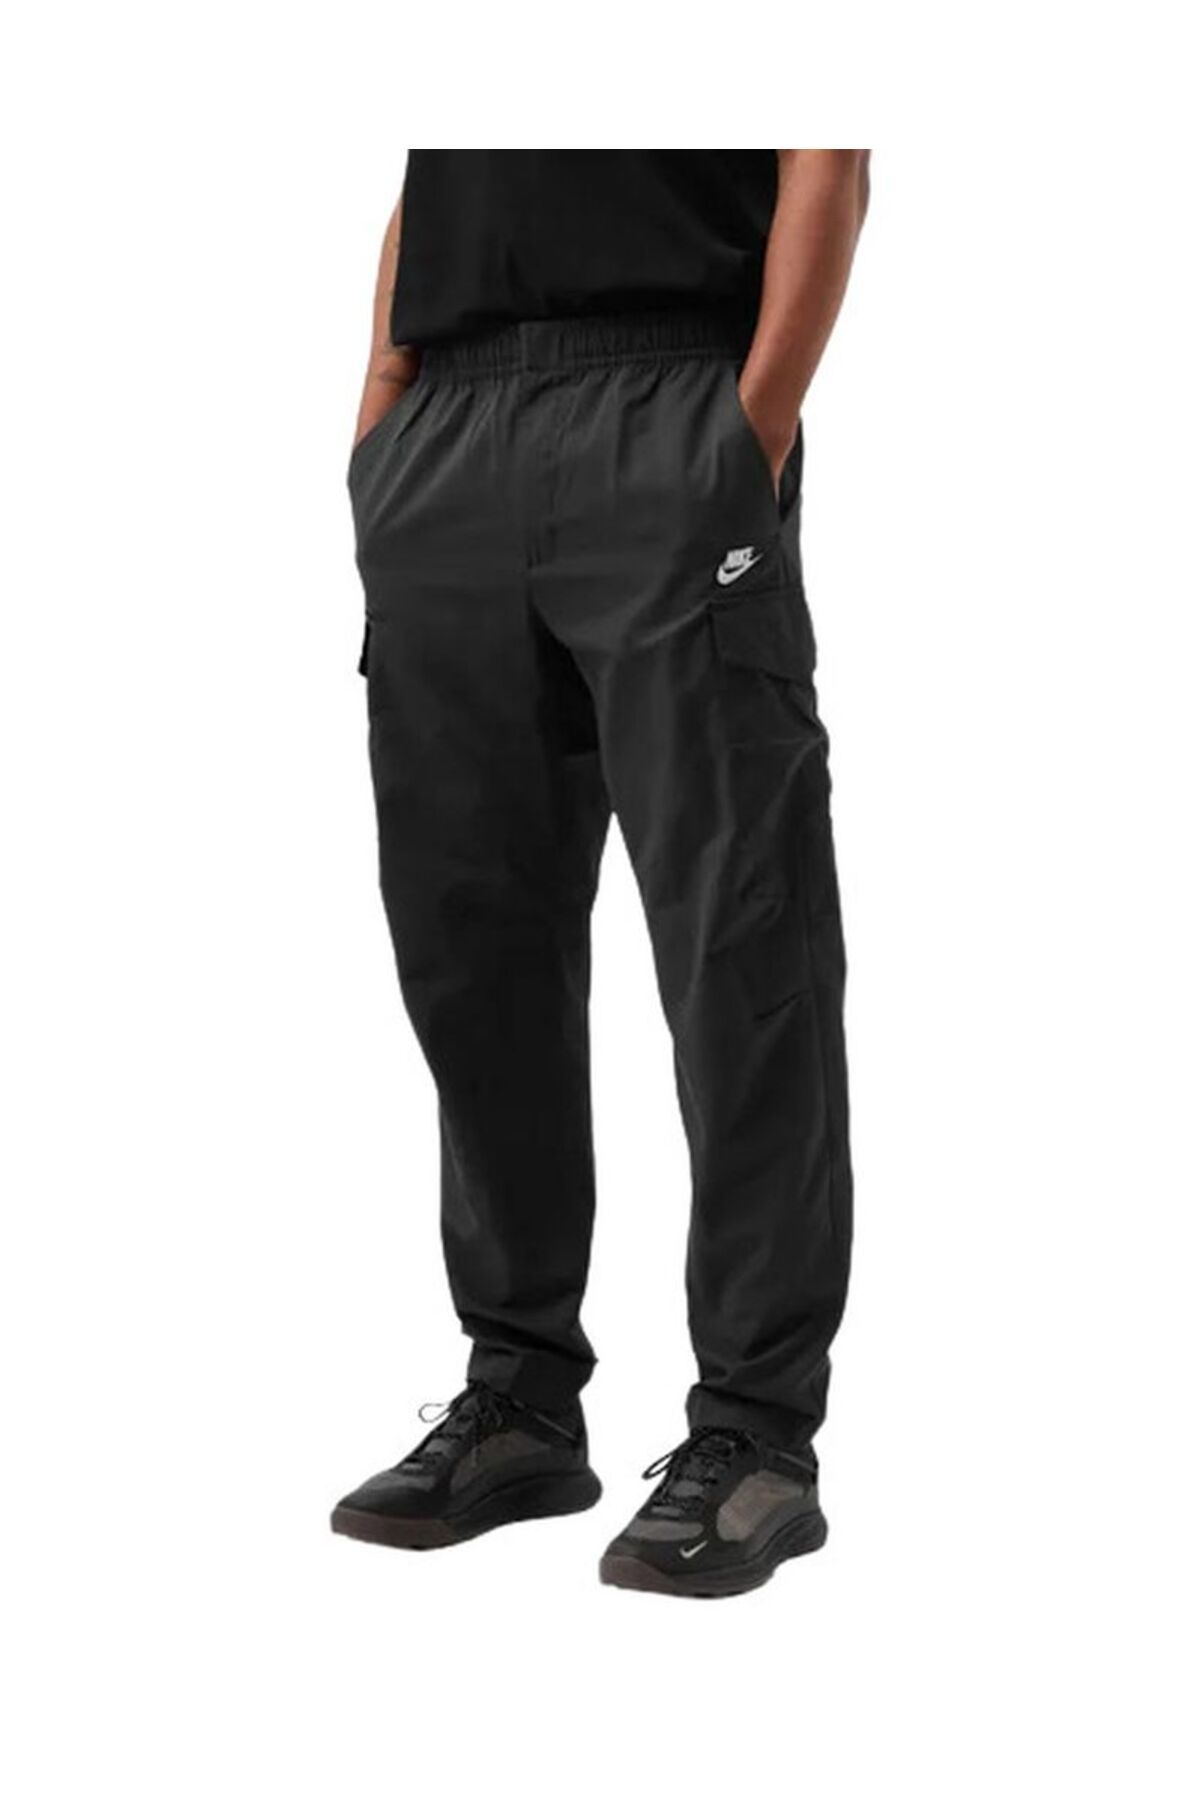 Nike Woven Unlıned Utılıty Cargo Pantolon Dd5207-010